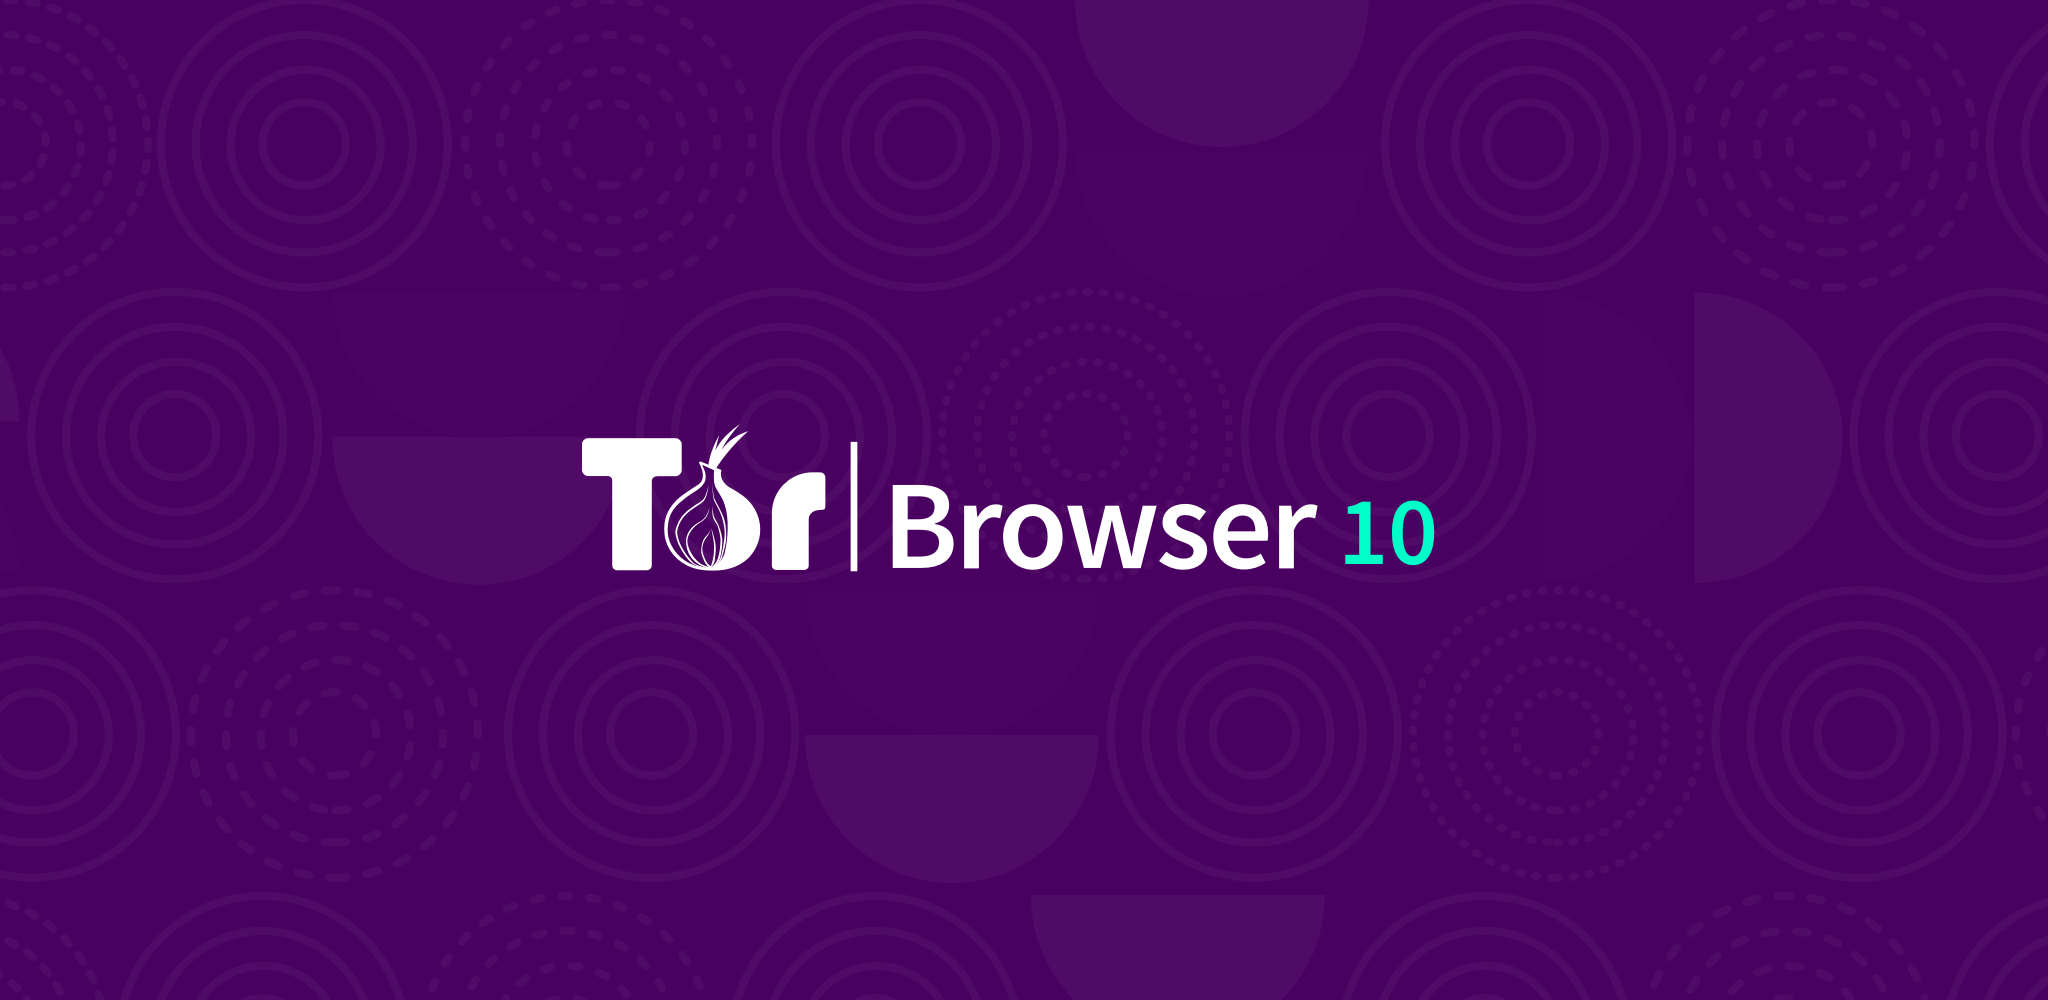 Download tor browser for pc mega тор браузер скачать бесплатно на русском отзывы mega2web